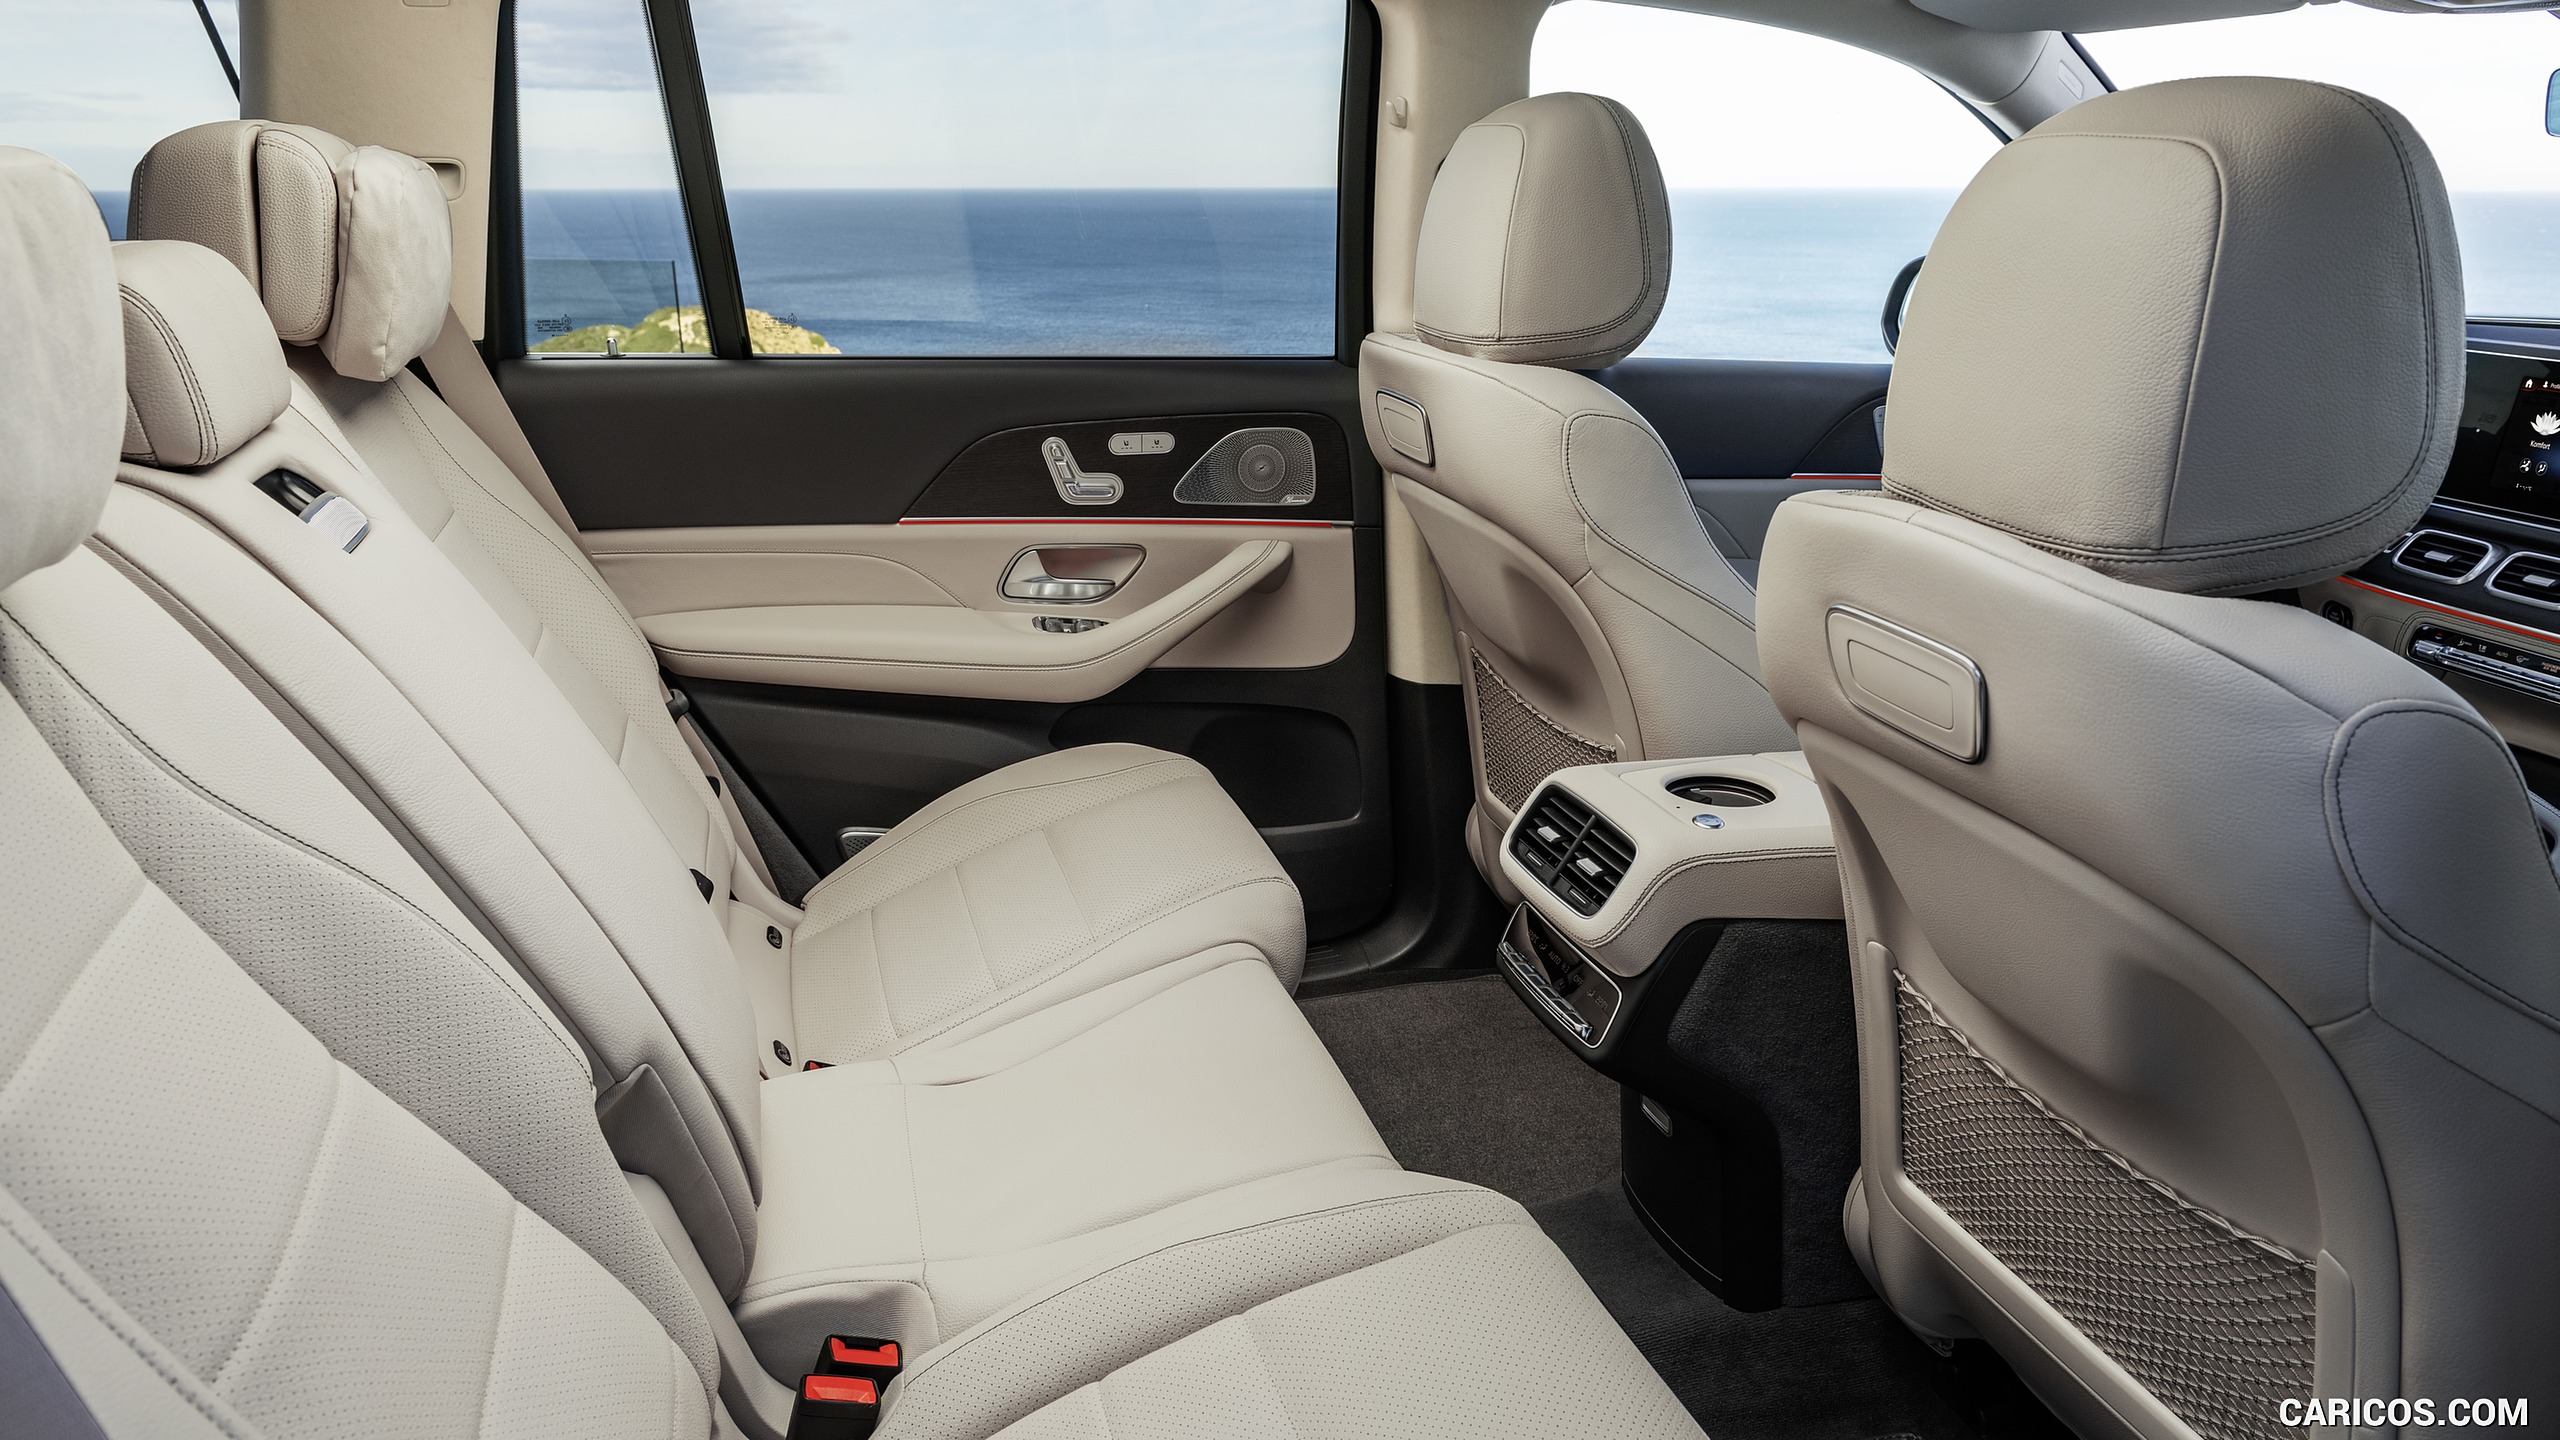 2020 Mercedes-Benz GLS - Interior, Rear Seats, #77 of 427